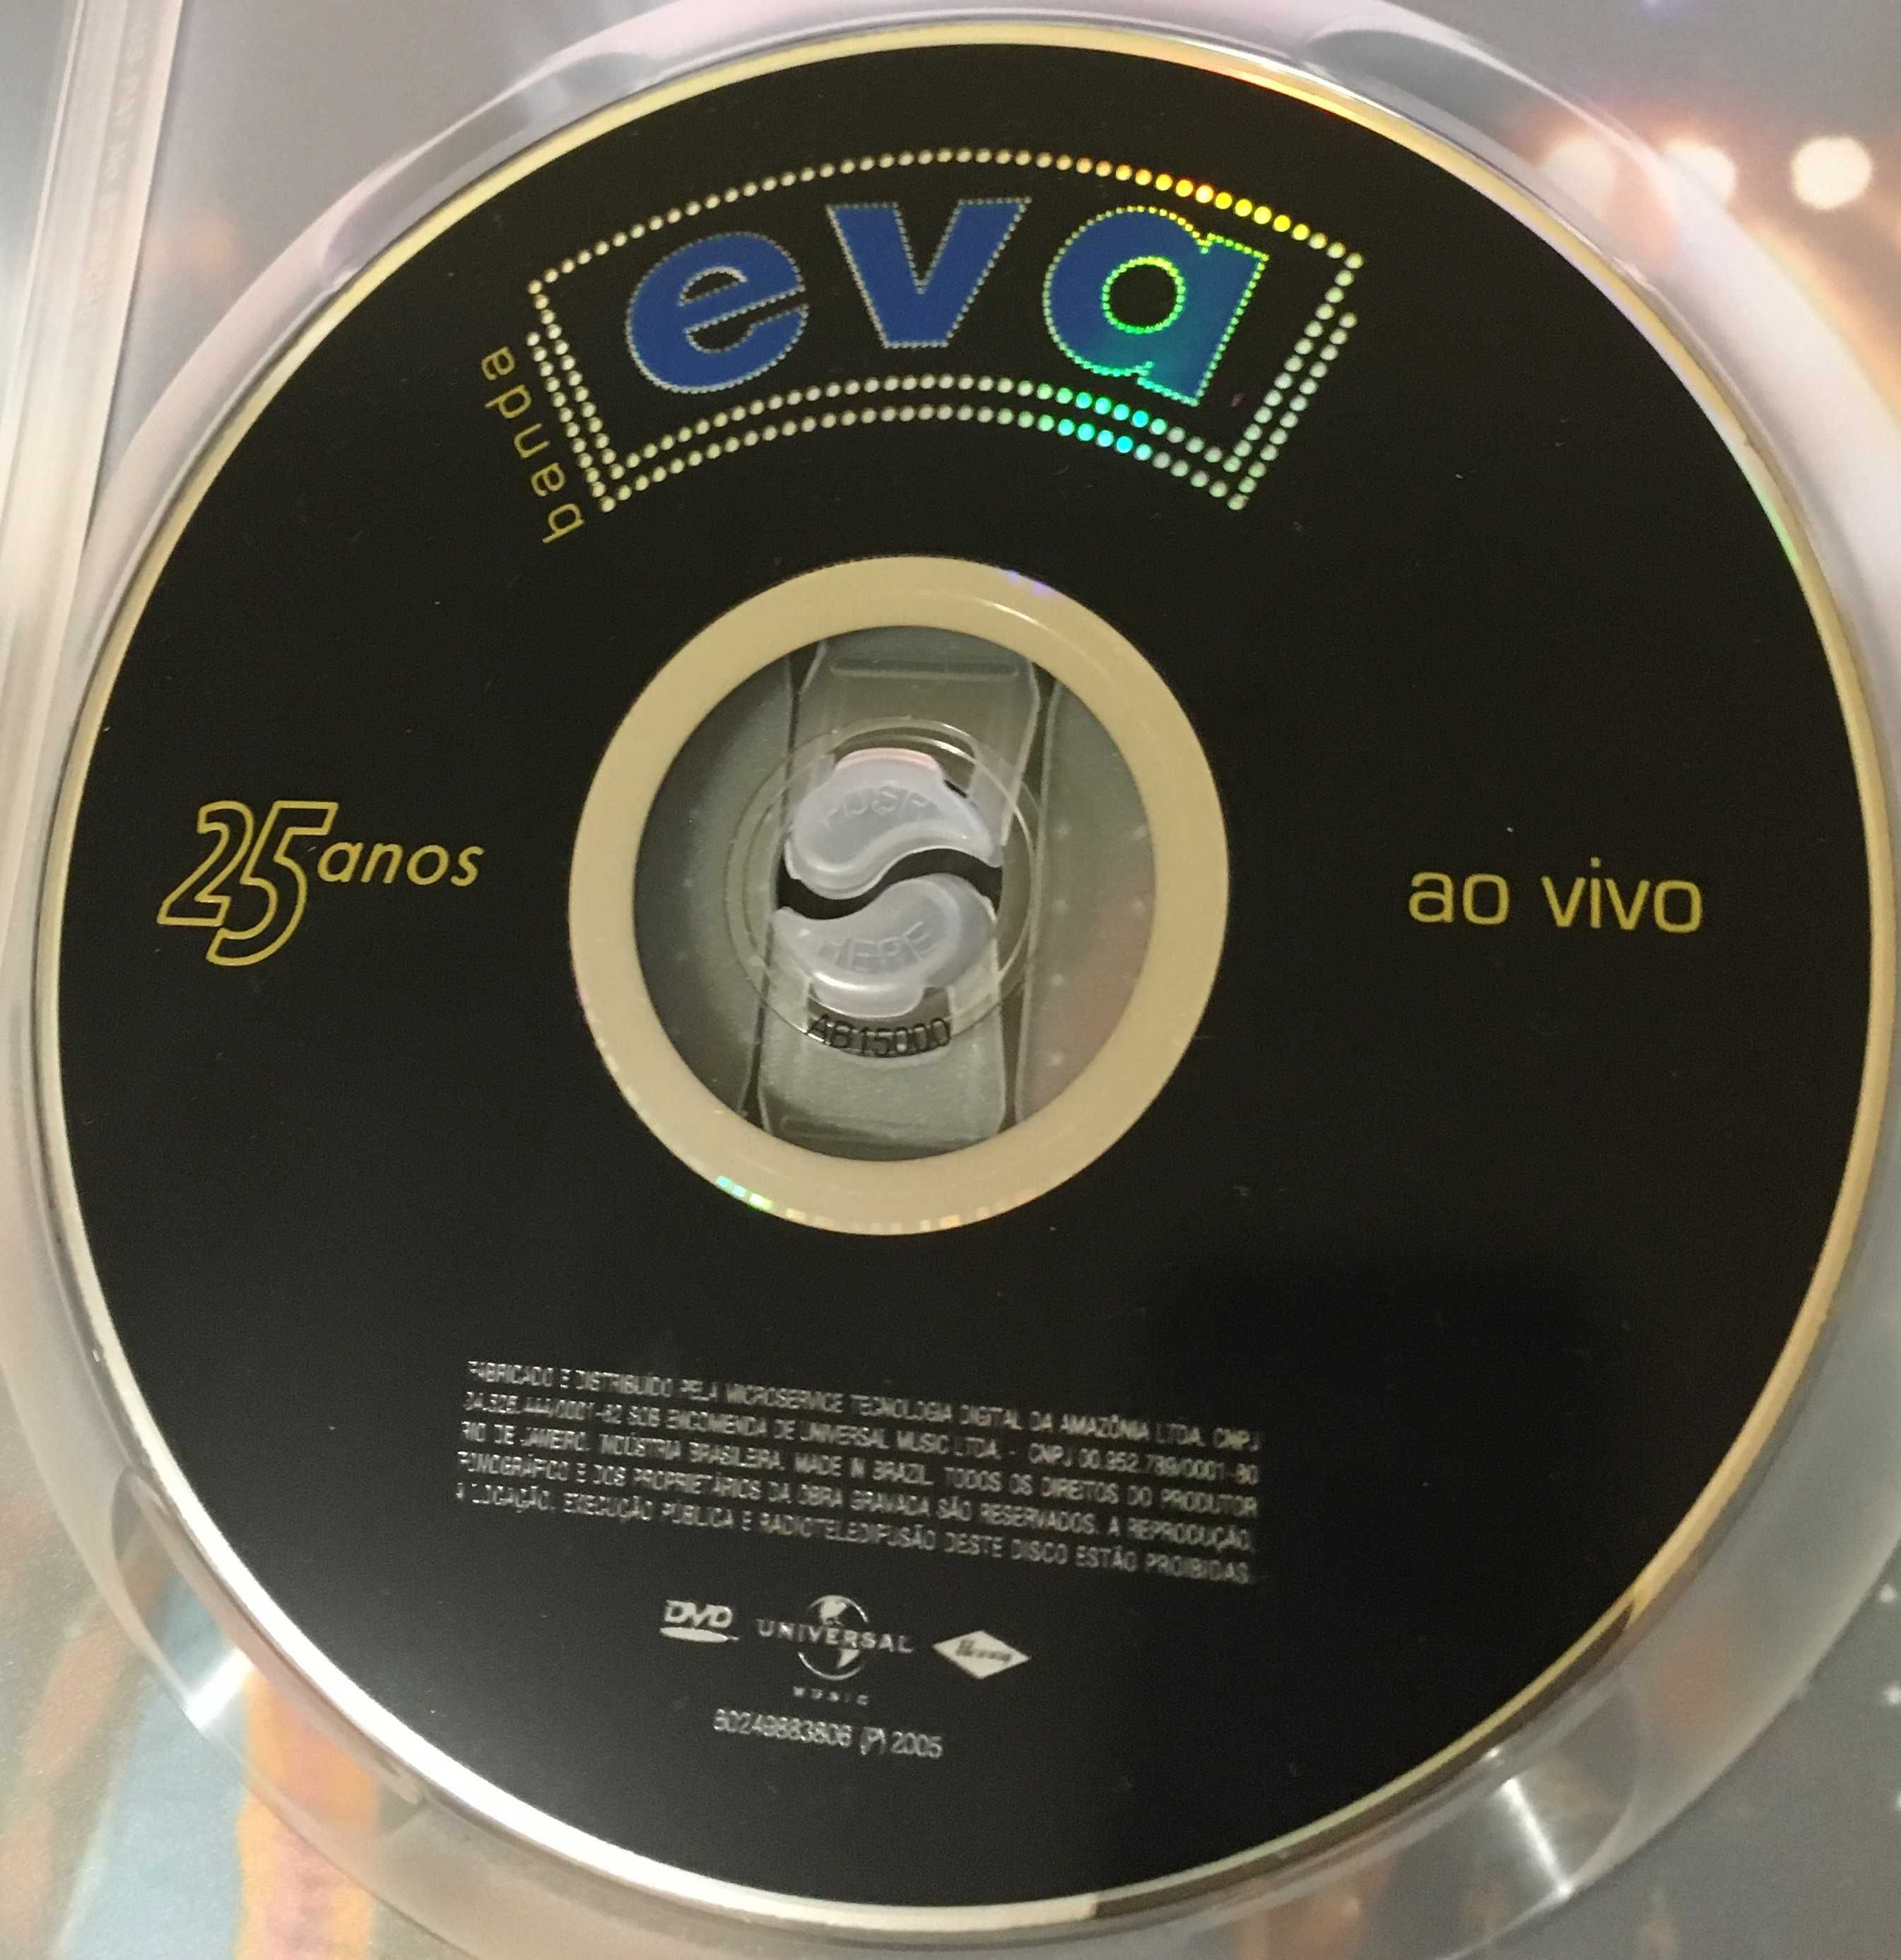 Banda Eva 25 Anos ao Vivo -DVD